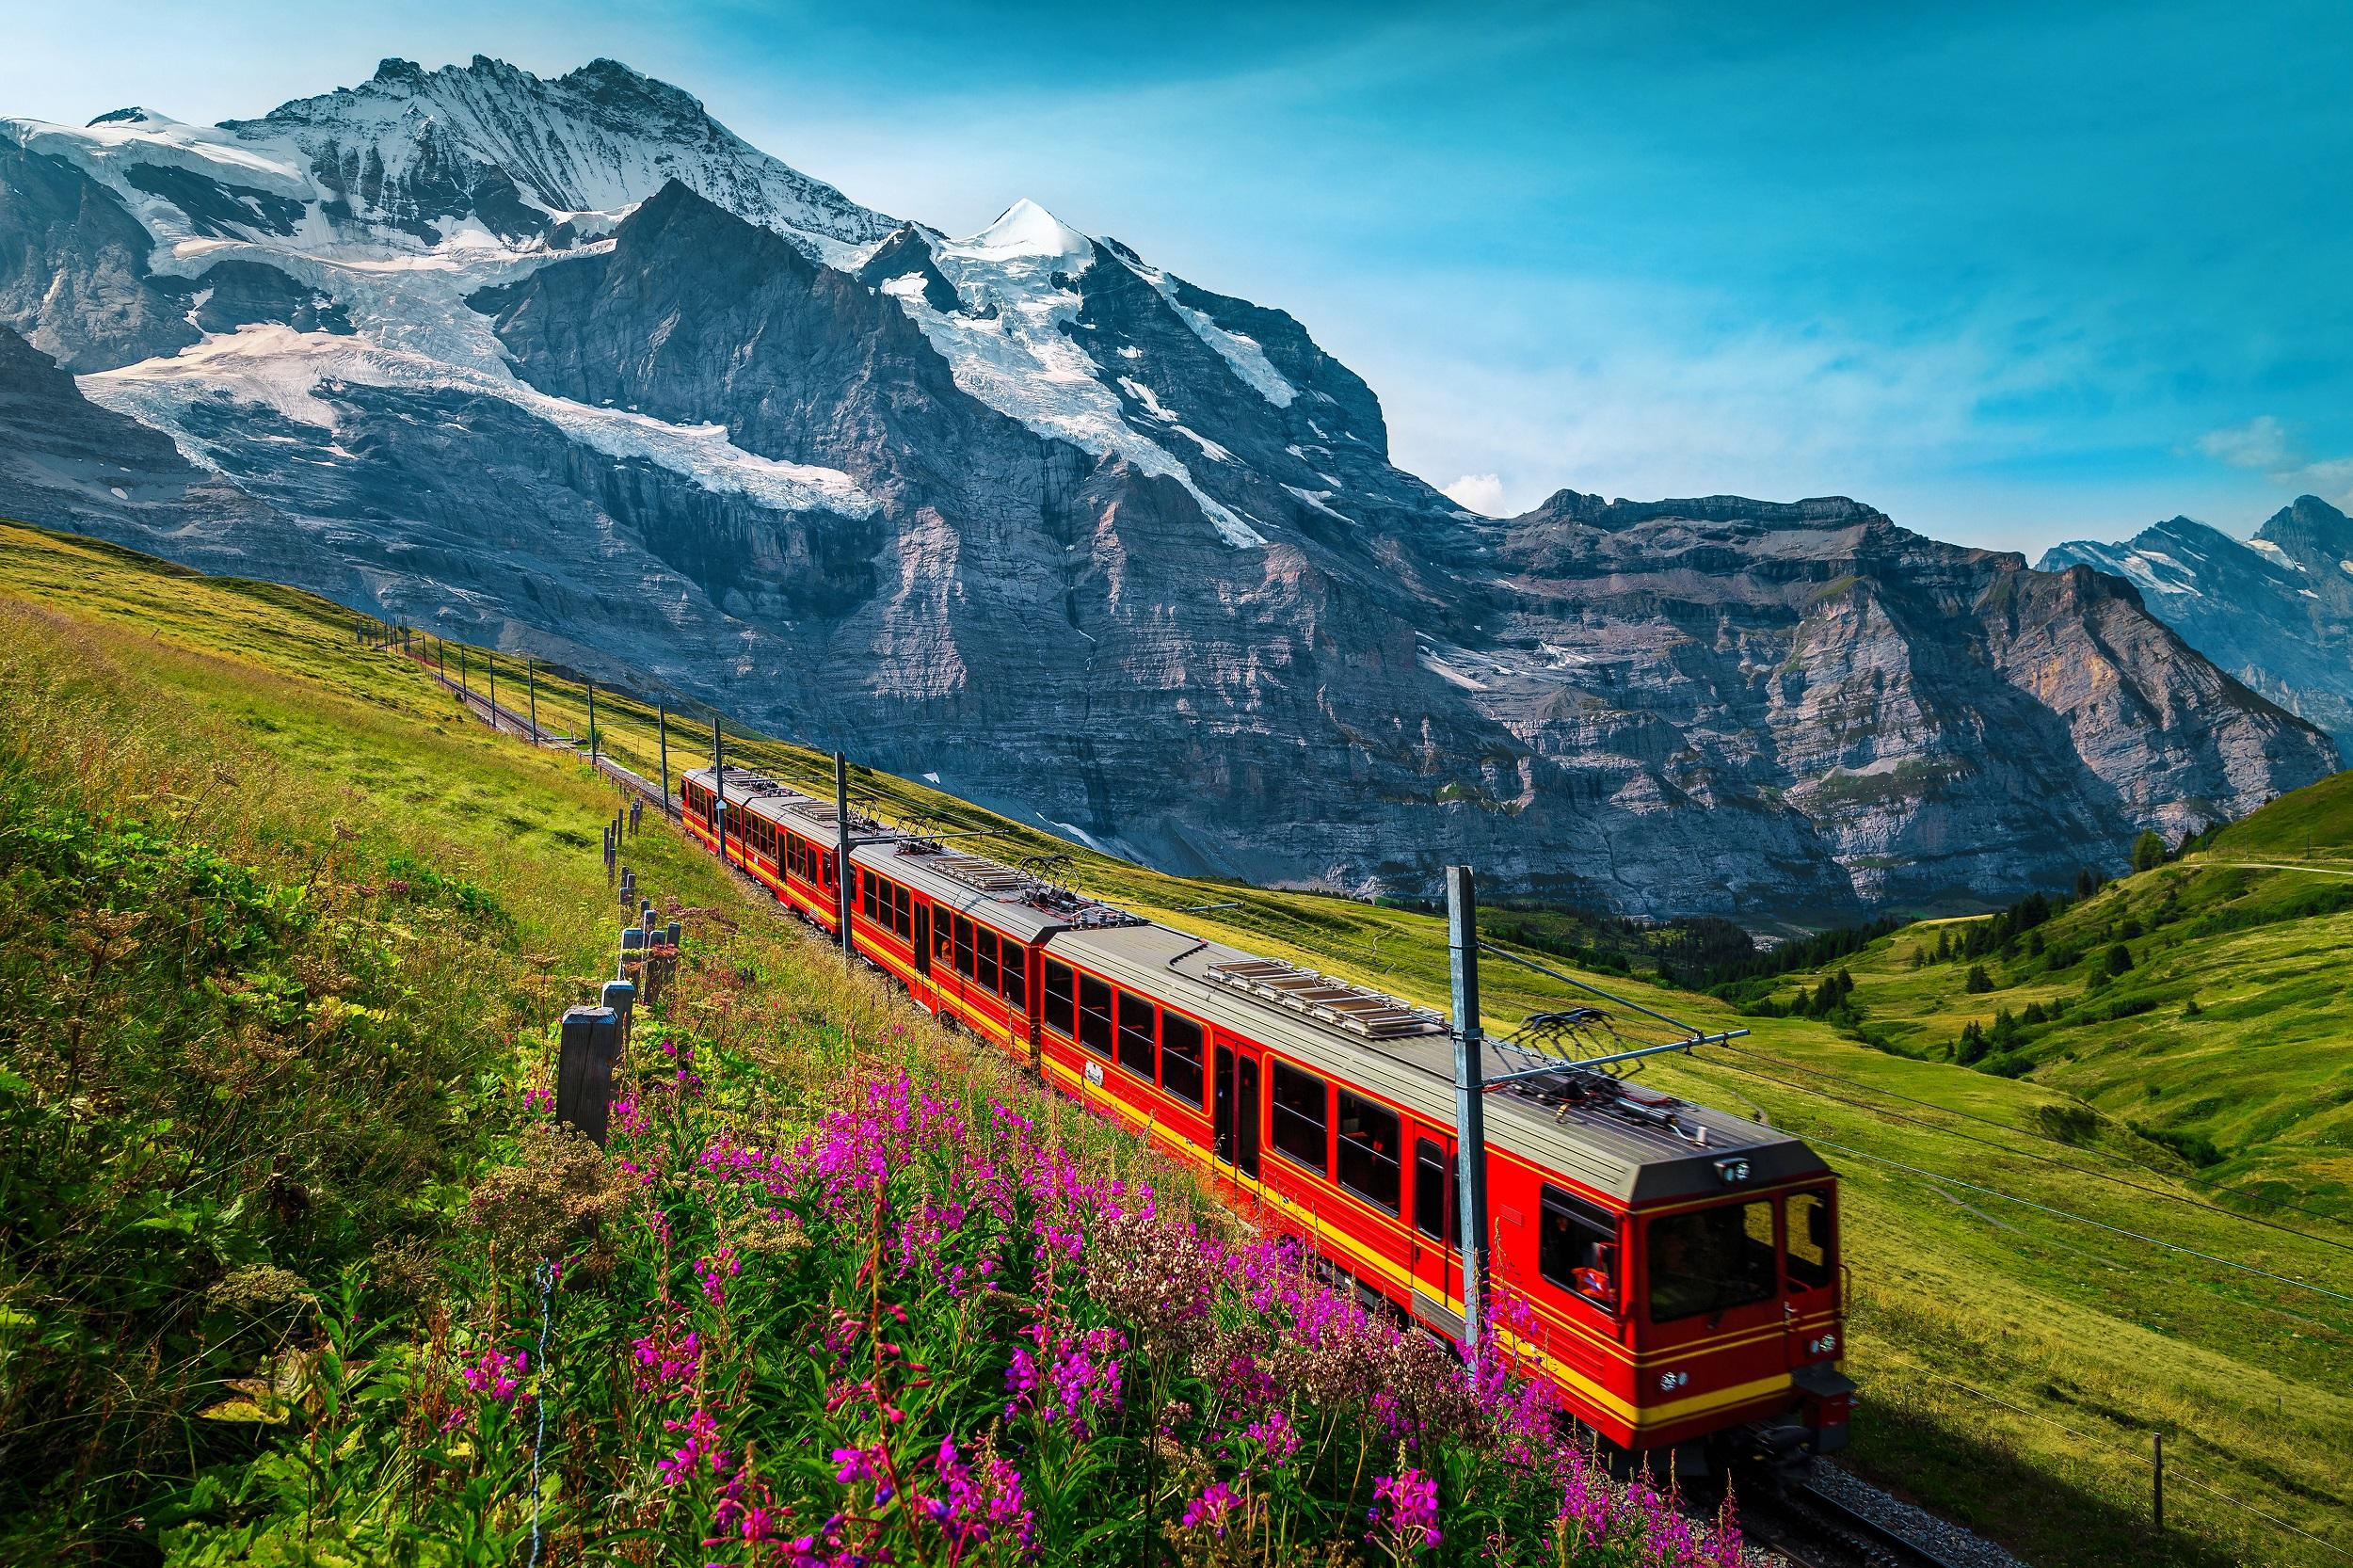 Schweiz - Jungfraujoch